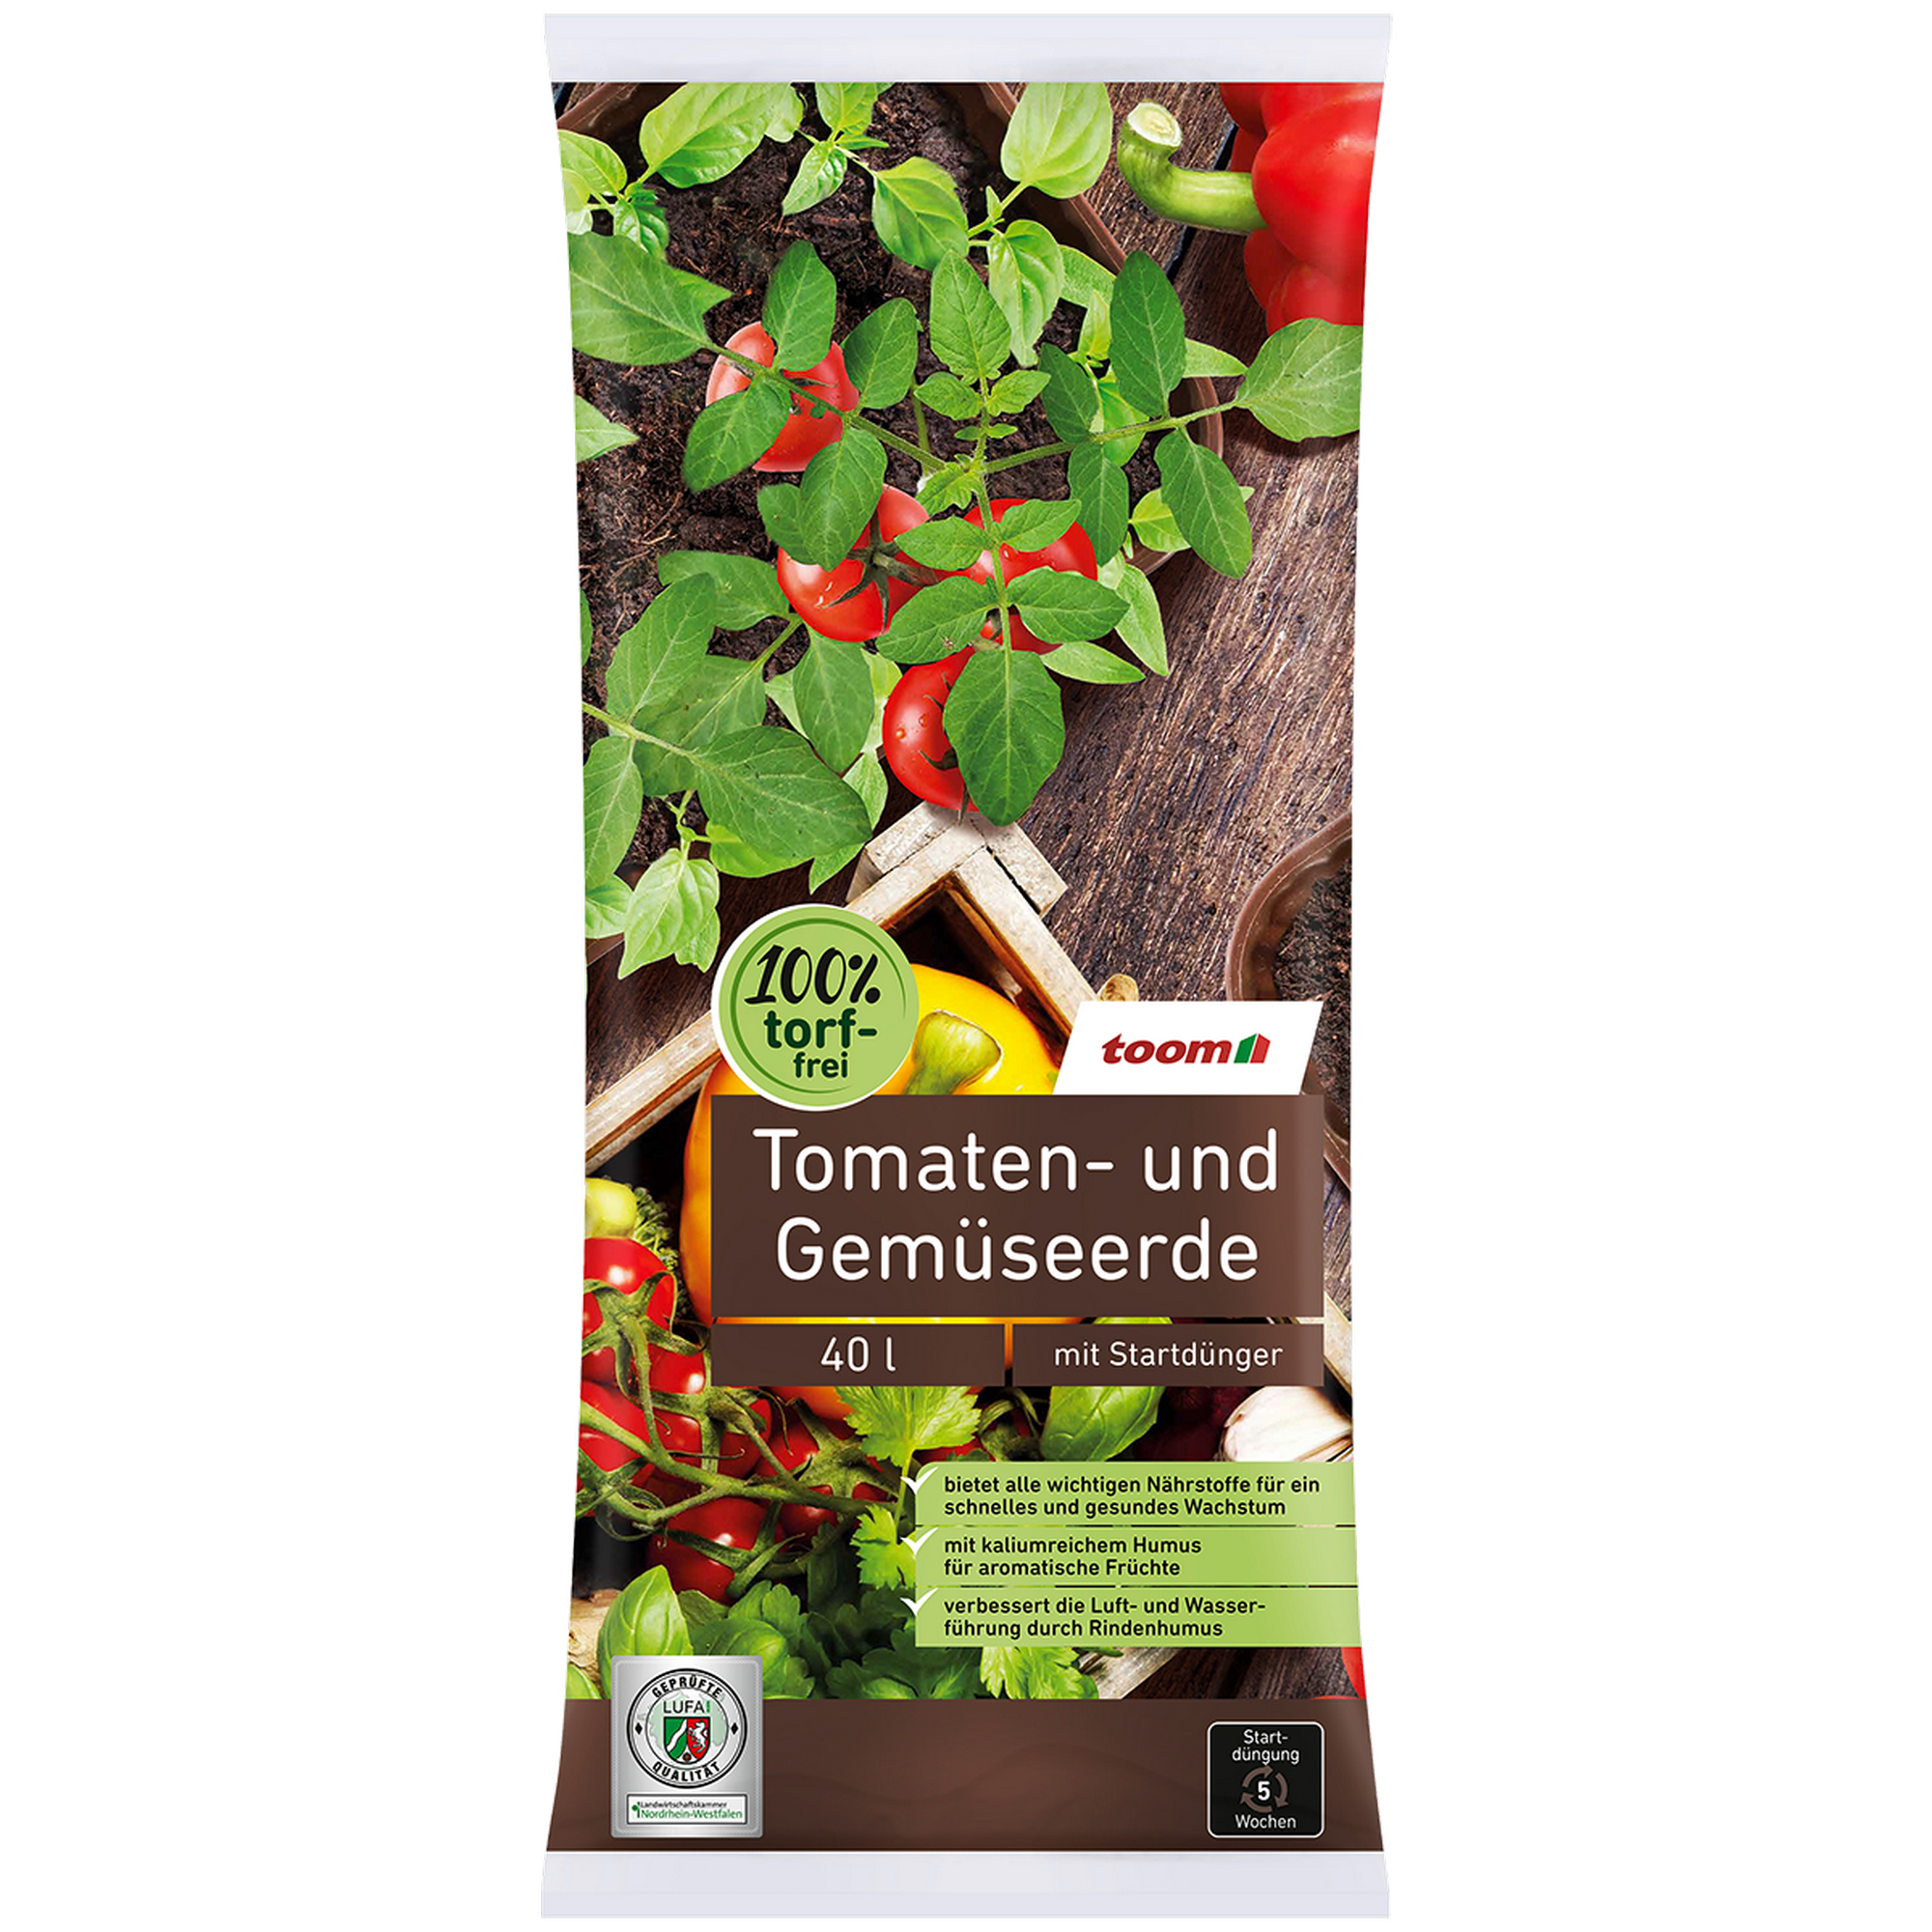 Tomaten- und Gemüseerde torffrei 40 l + product picture